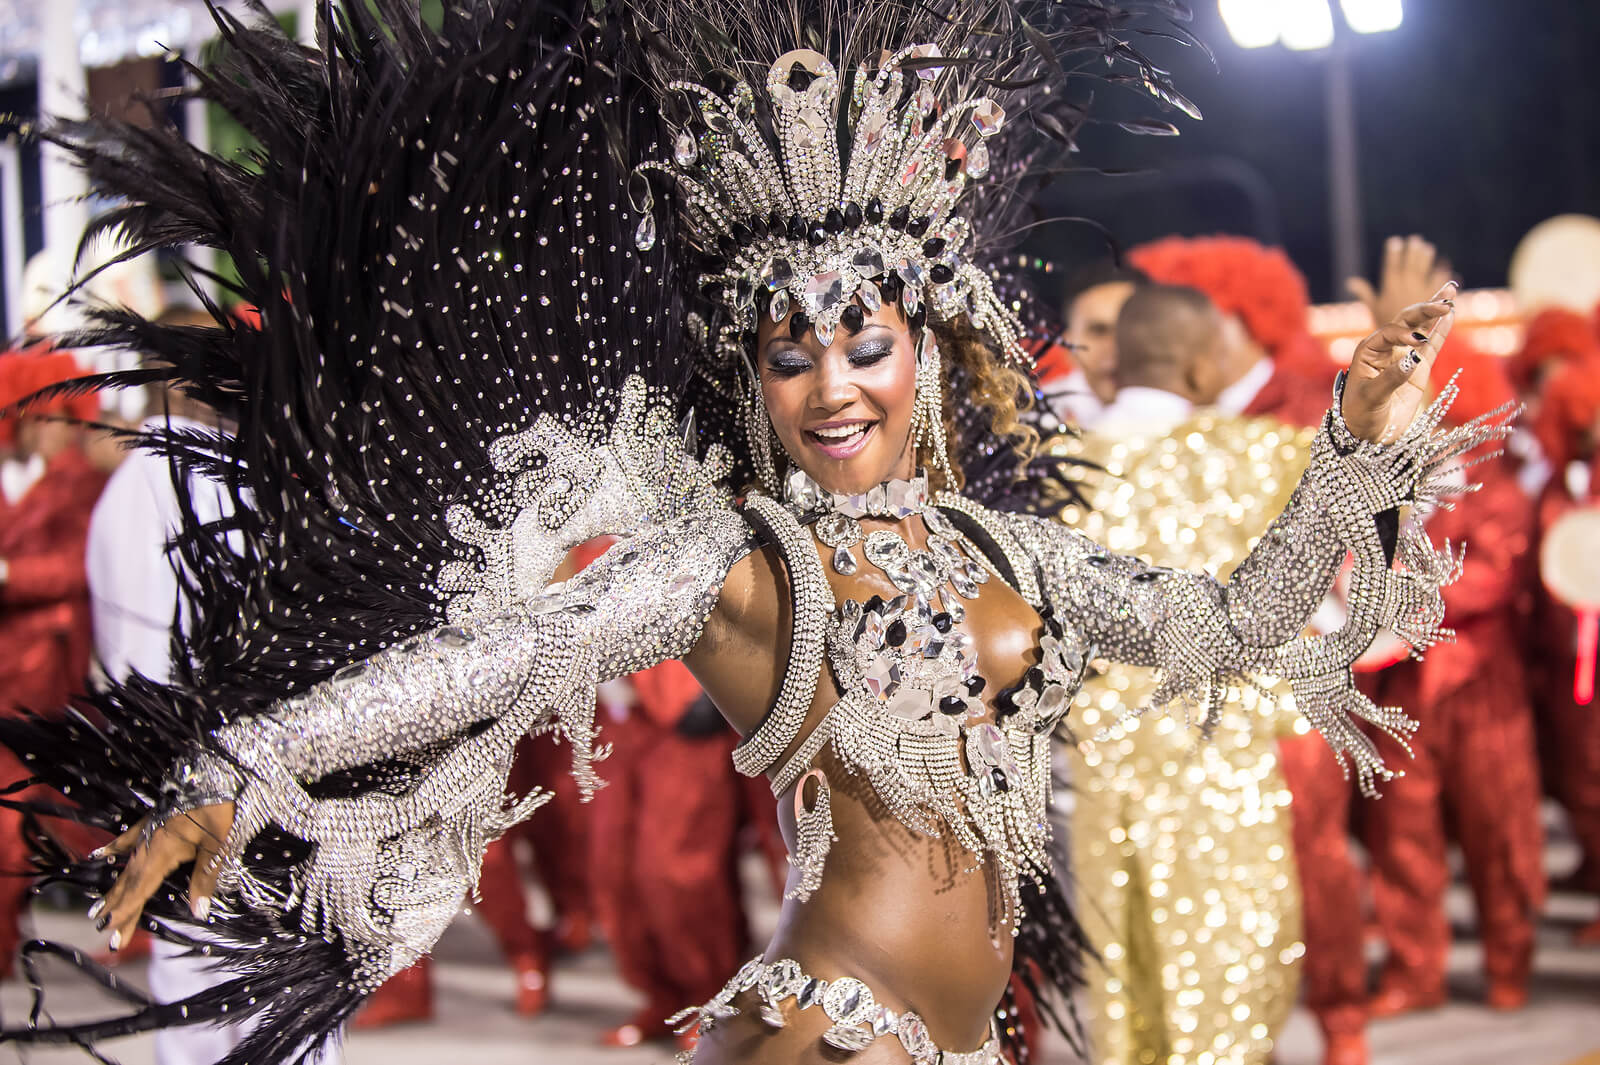 Le Carnaval de Rio 2013 - YouTube